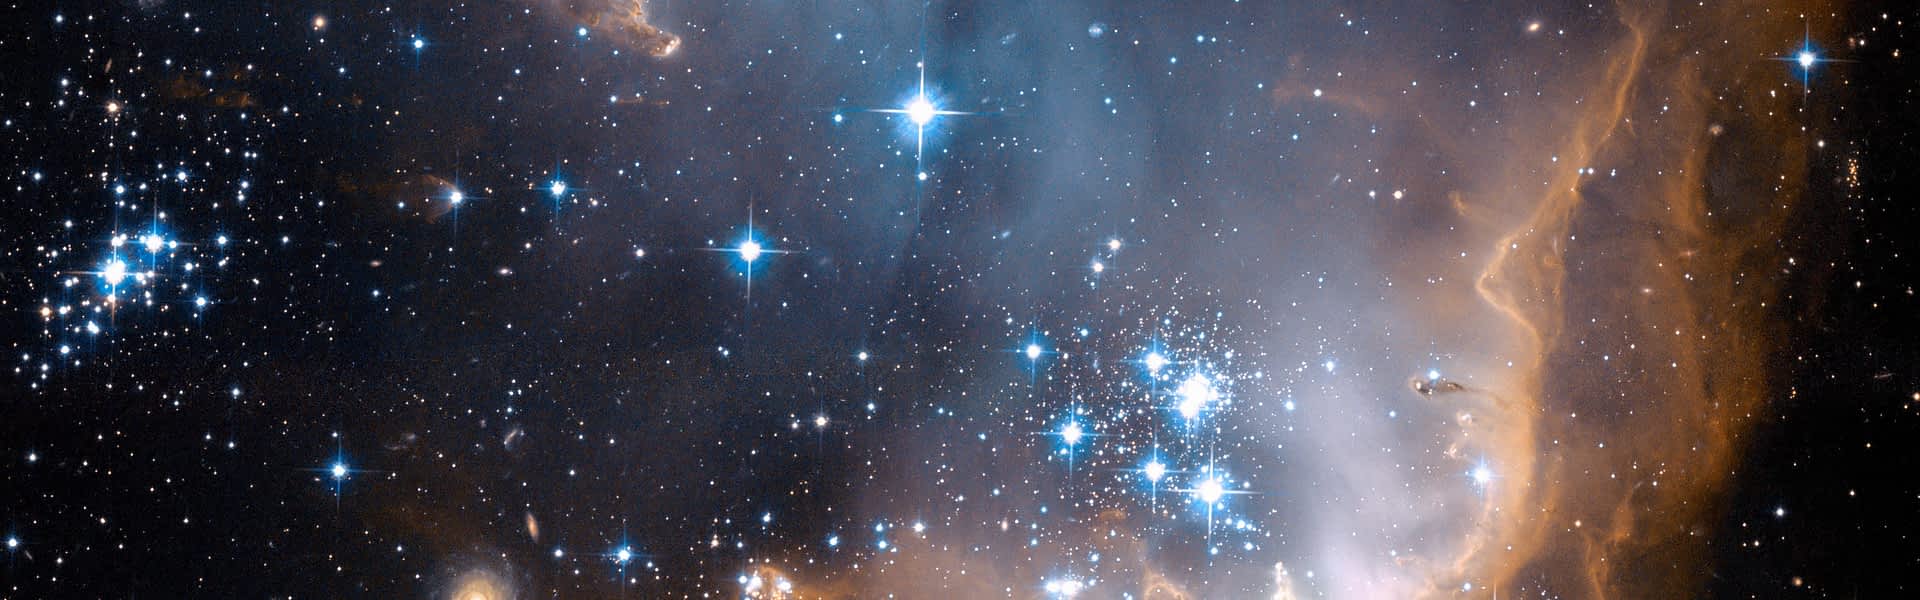 Sternentstehungsgebiet in der kleinen Magellan’schen Wolke